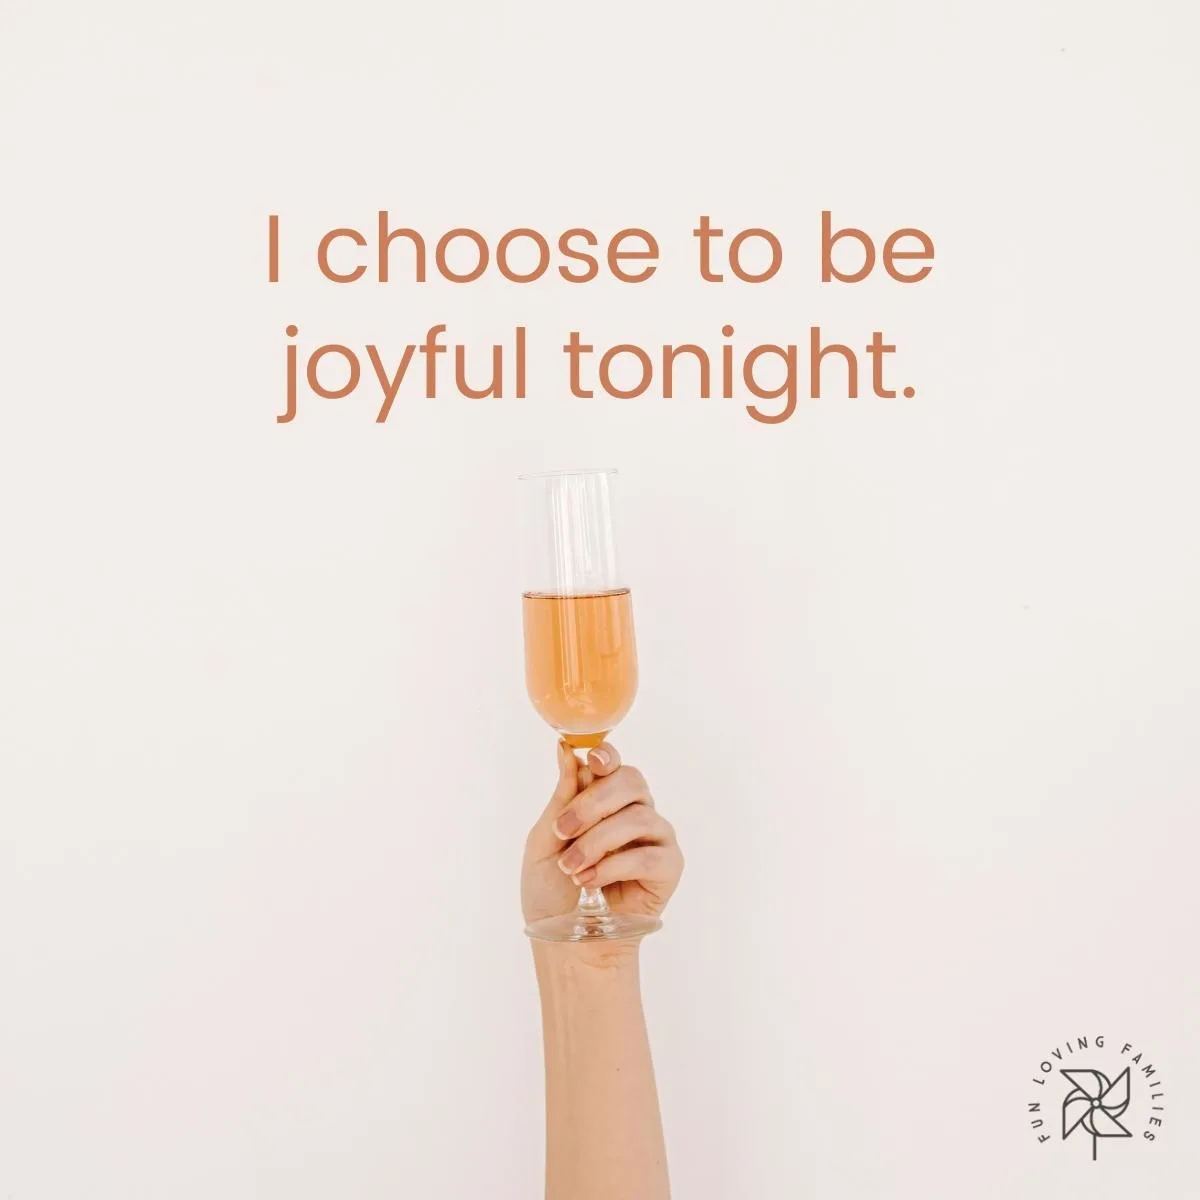 I choose to be joyful tonight affirmation